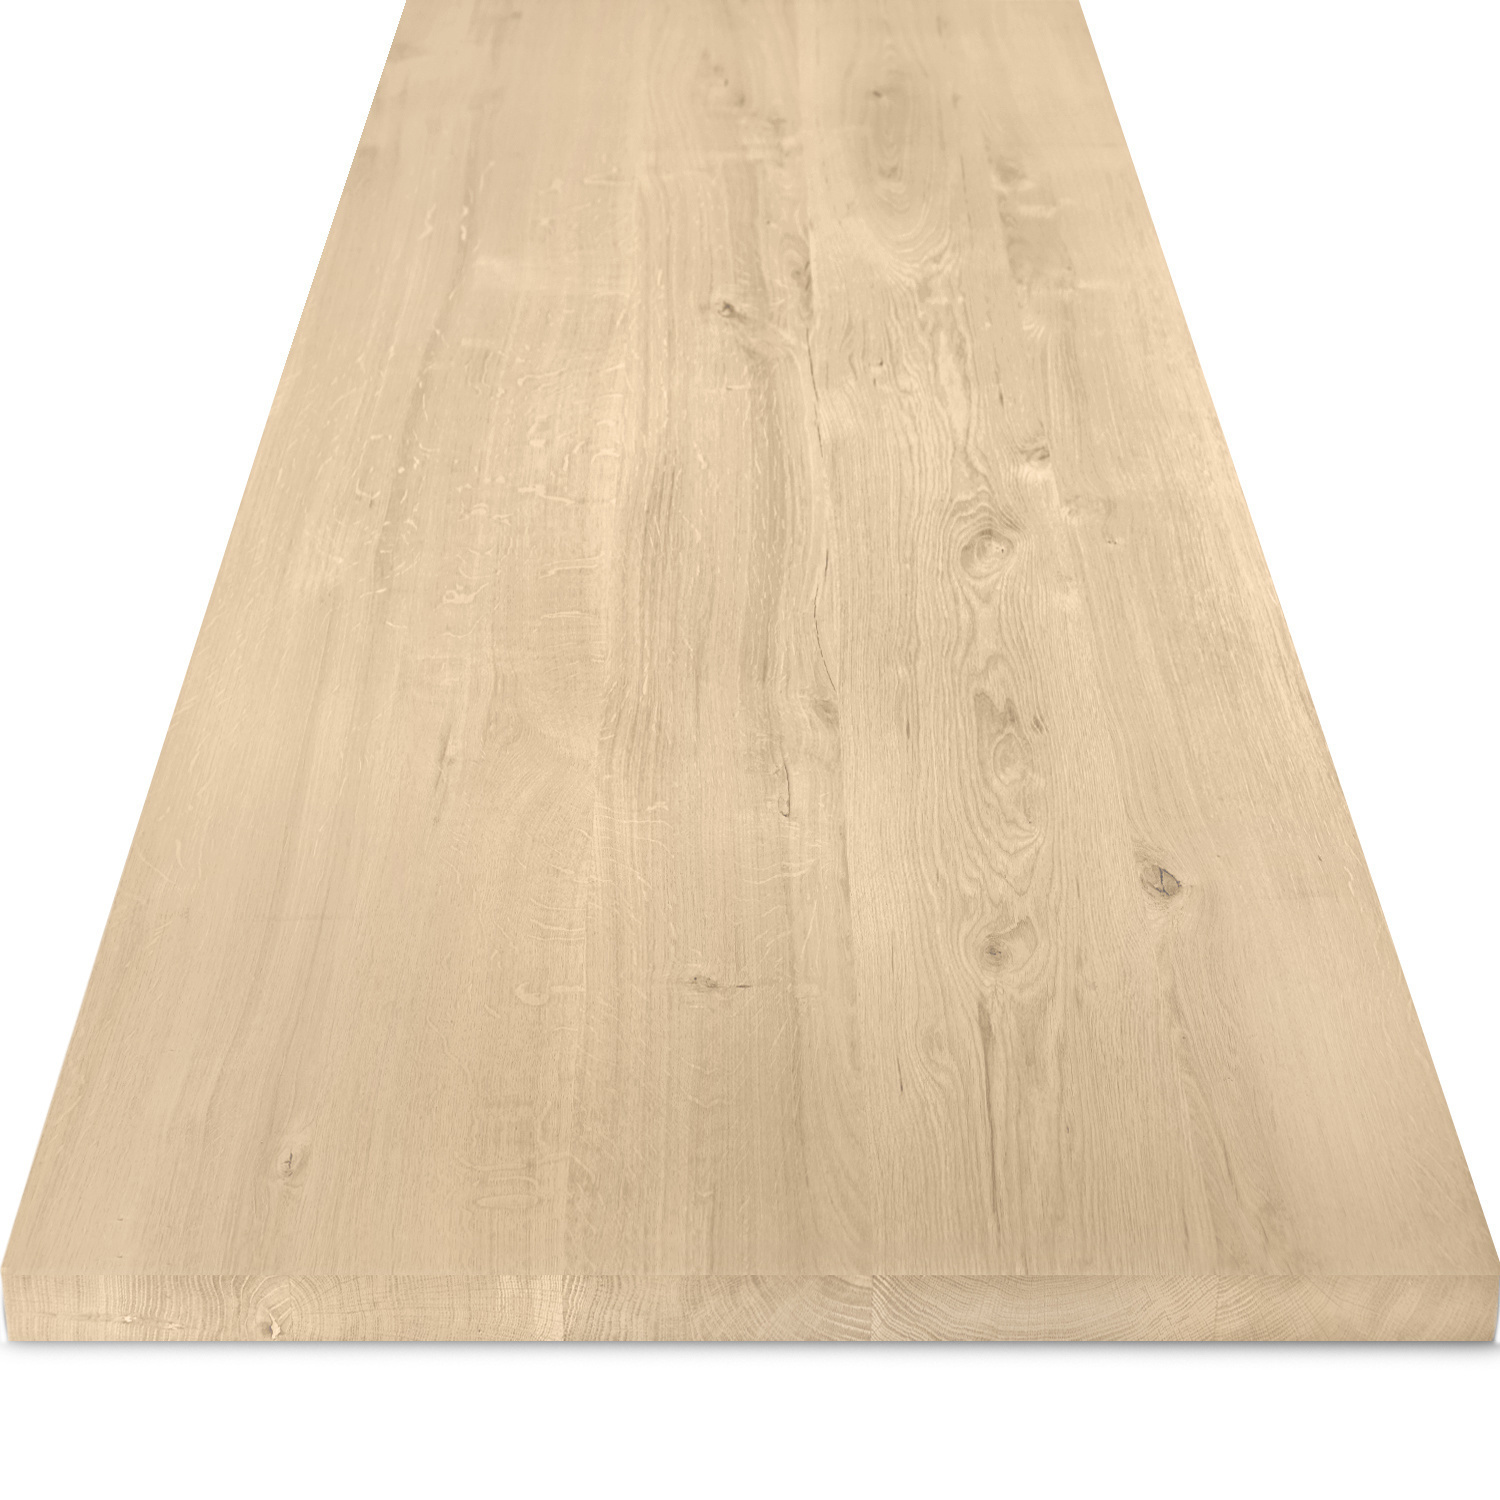  Tischplatte Eiche - 2,7 cm dick (1-Schicht) - Breite Lamellen (10 - 12 cm breit) - Eichenholz rustikal - verleimt & künstlich getrocknet (HF 8-12%) - verschiedene Größen